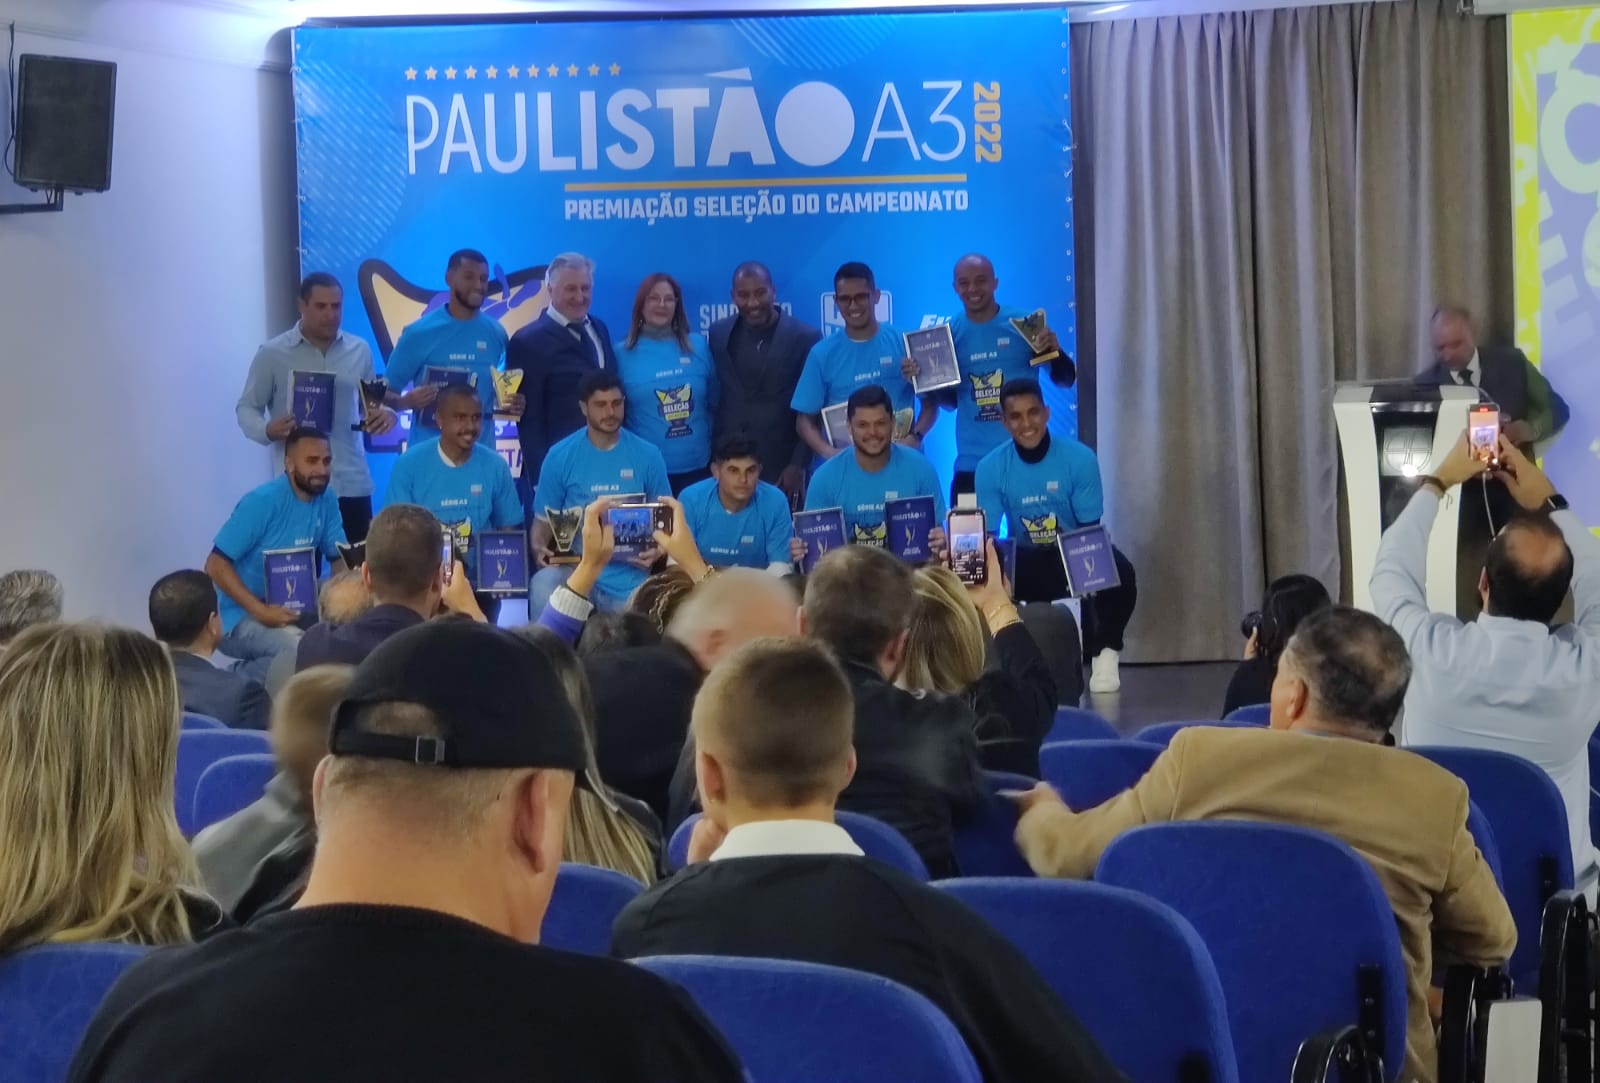  Sindicato de Atletas SP promove premiação dos melhores do Paulistão A3